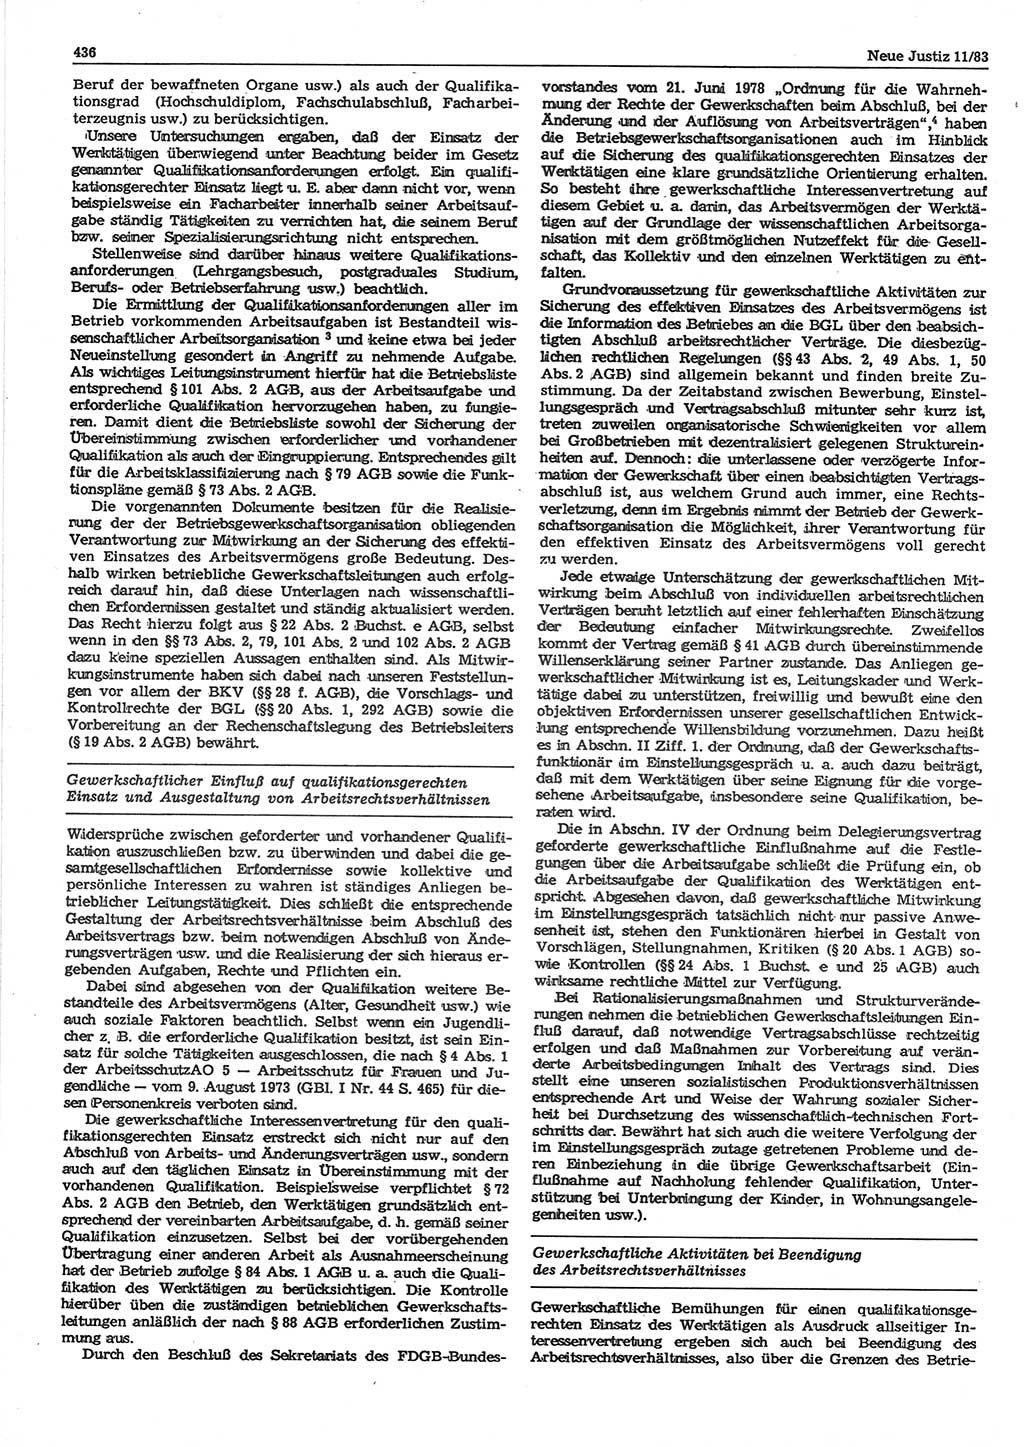 Neue Justiz (NJ), Zeitschrift für sozialistisches Recht und Gesetzlichkeit [Deutsche Demokratische Republik (DDR)], 37. Jahrgang 1983, Seite 436 (NJ DDR 1983, S. 436)